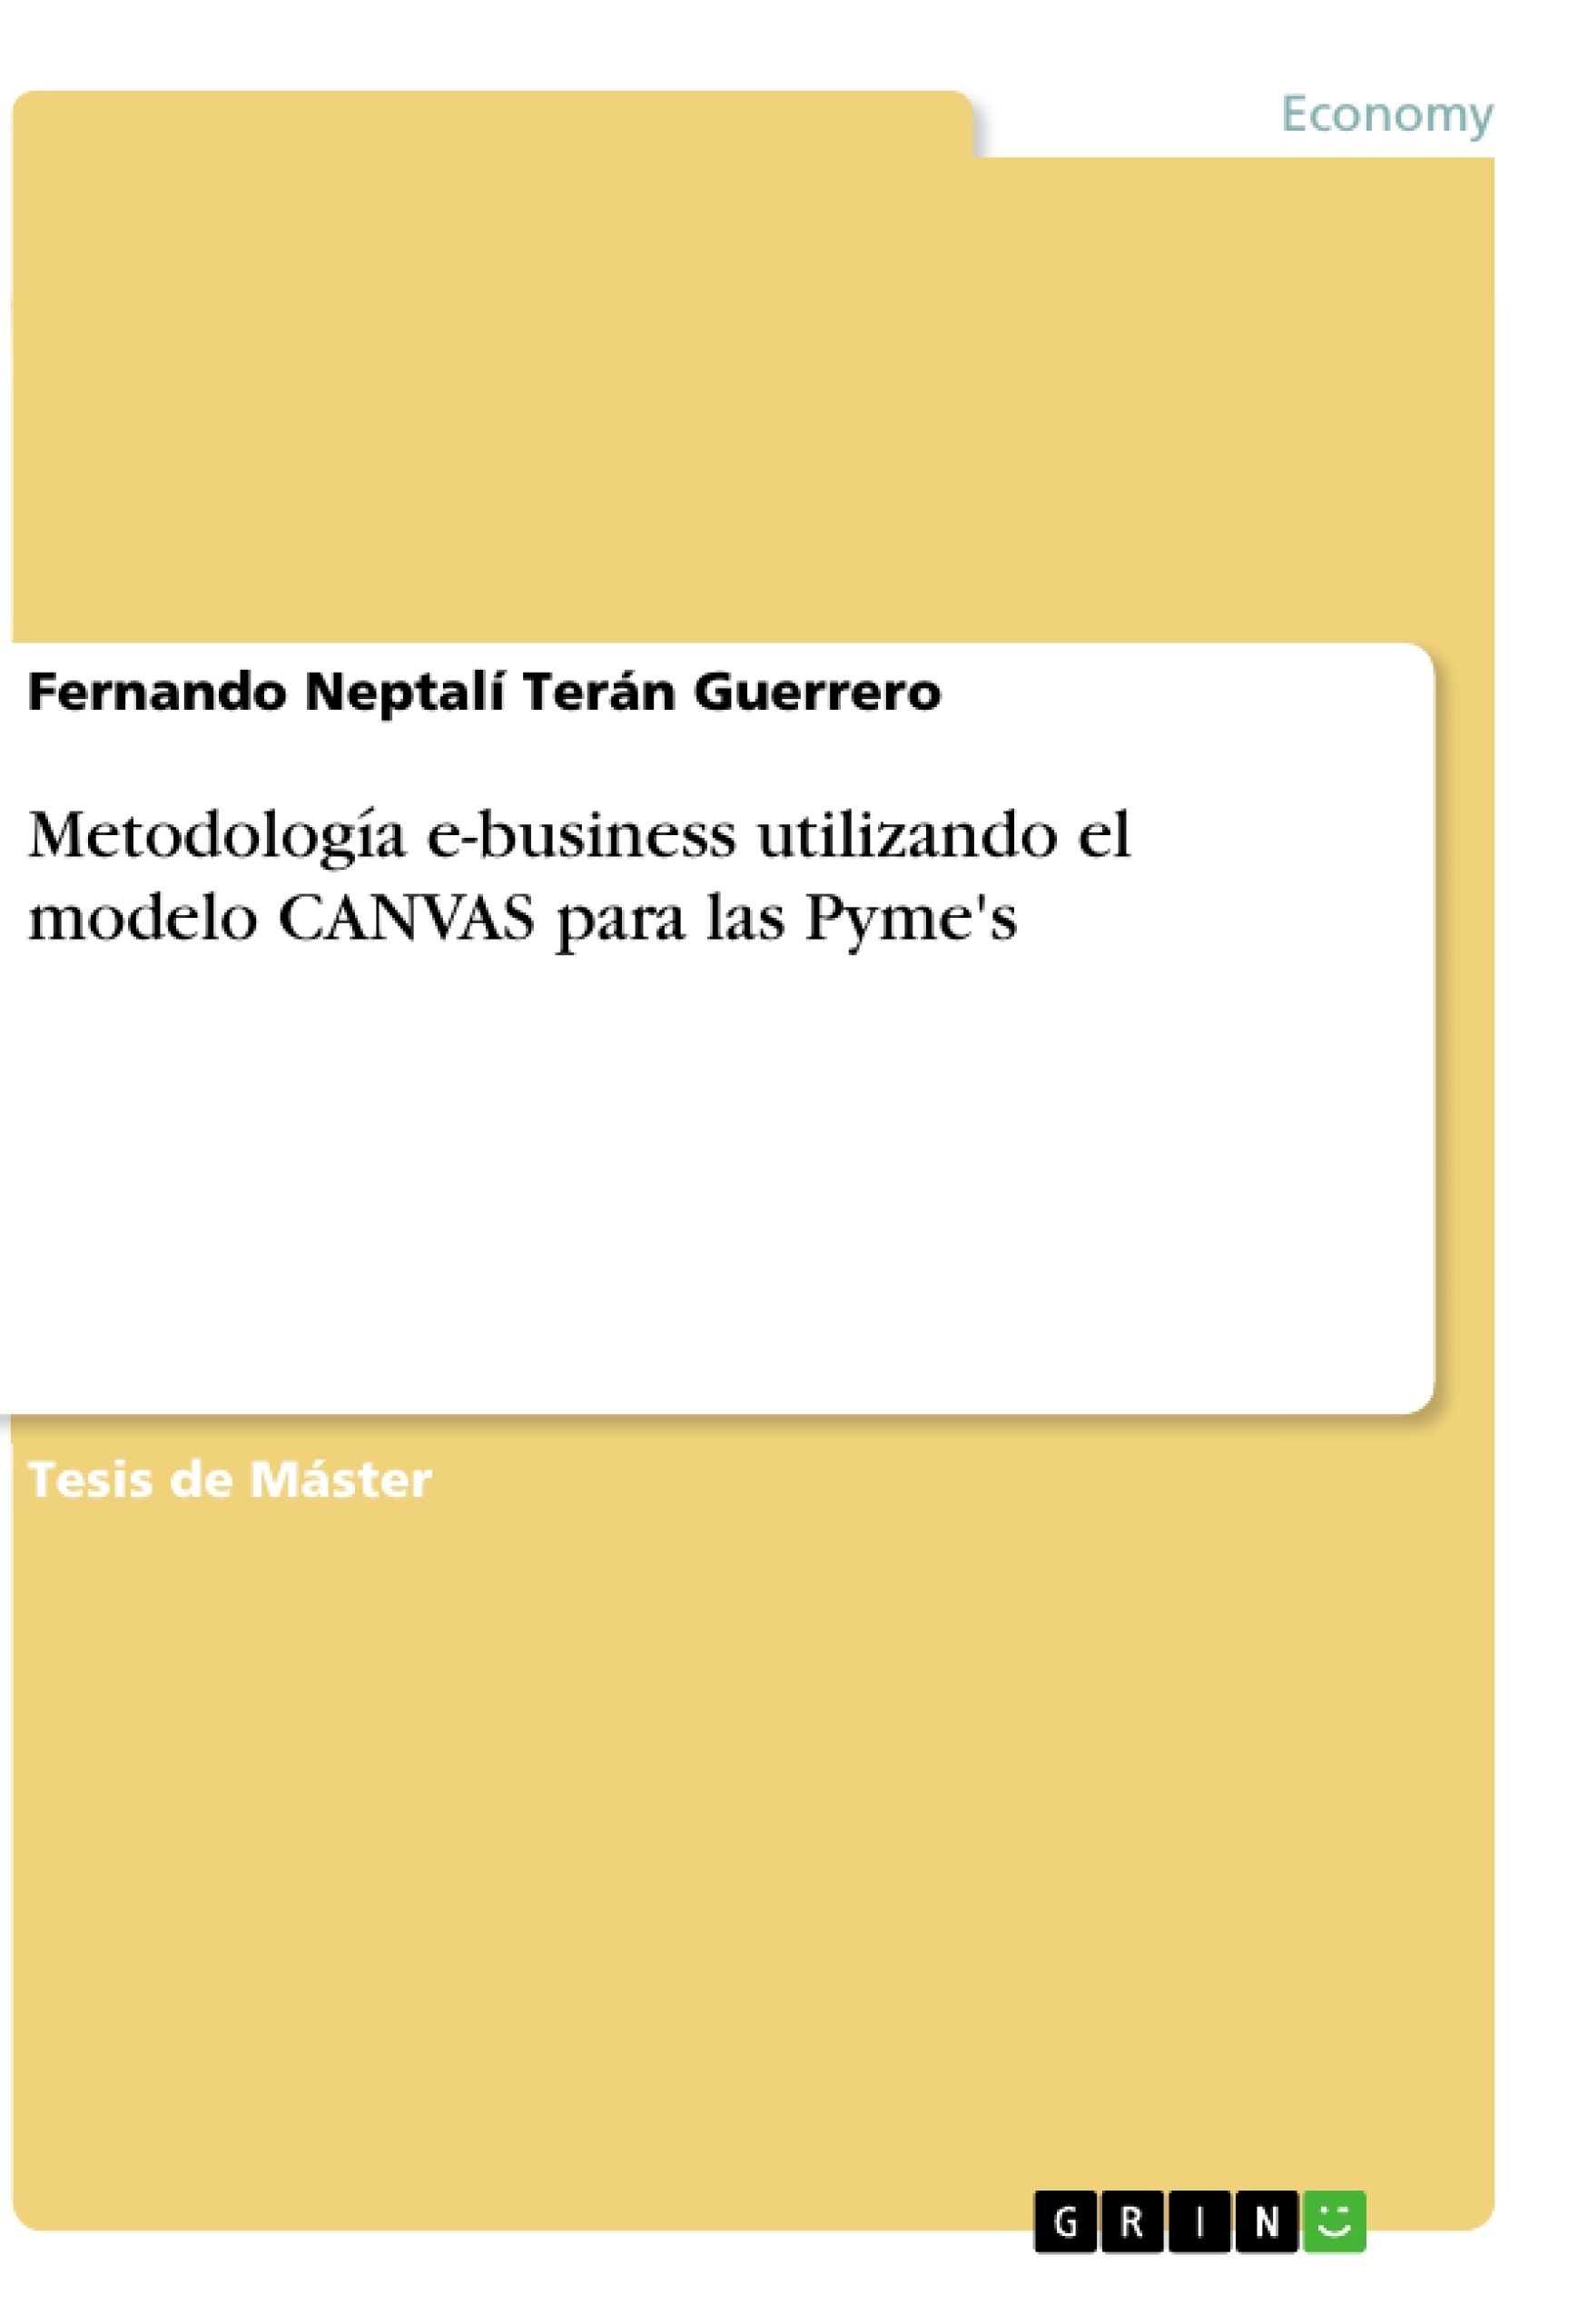 Título: Metodología e-business utilizando el modelo CANVAS para las Pyme's